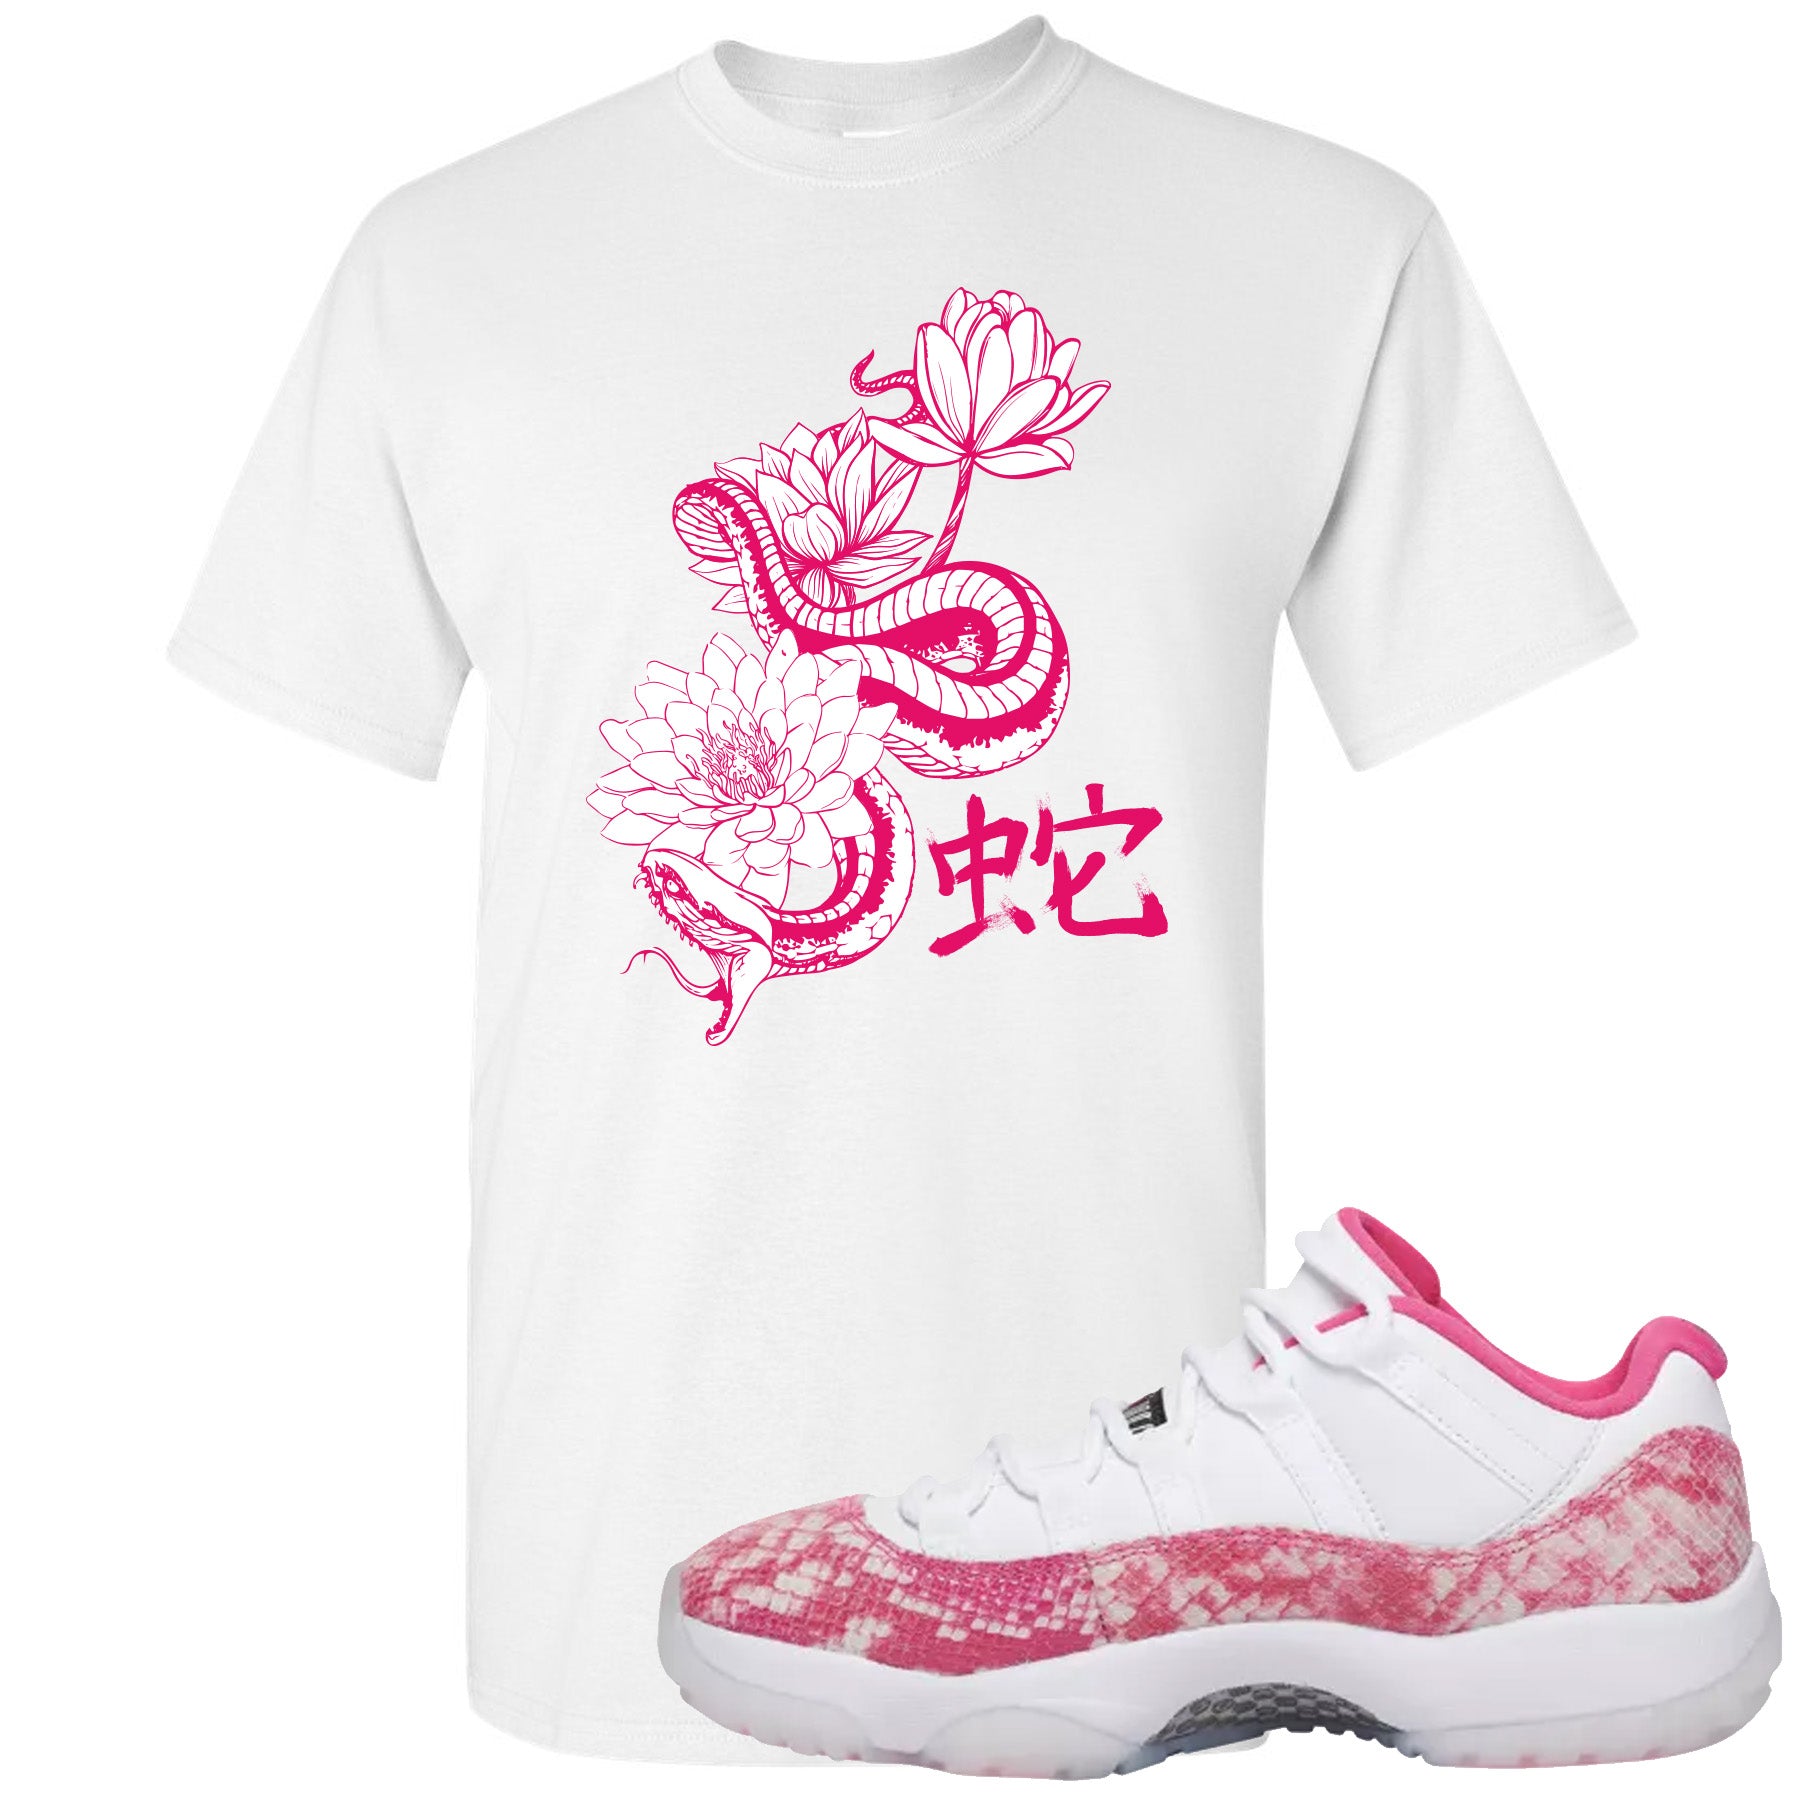 jordan 11 pink snakeskin shirt